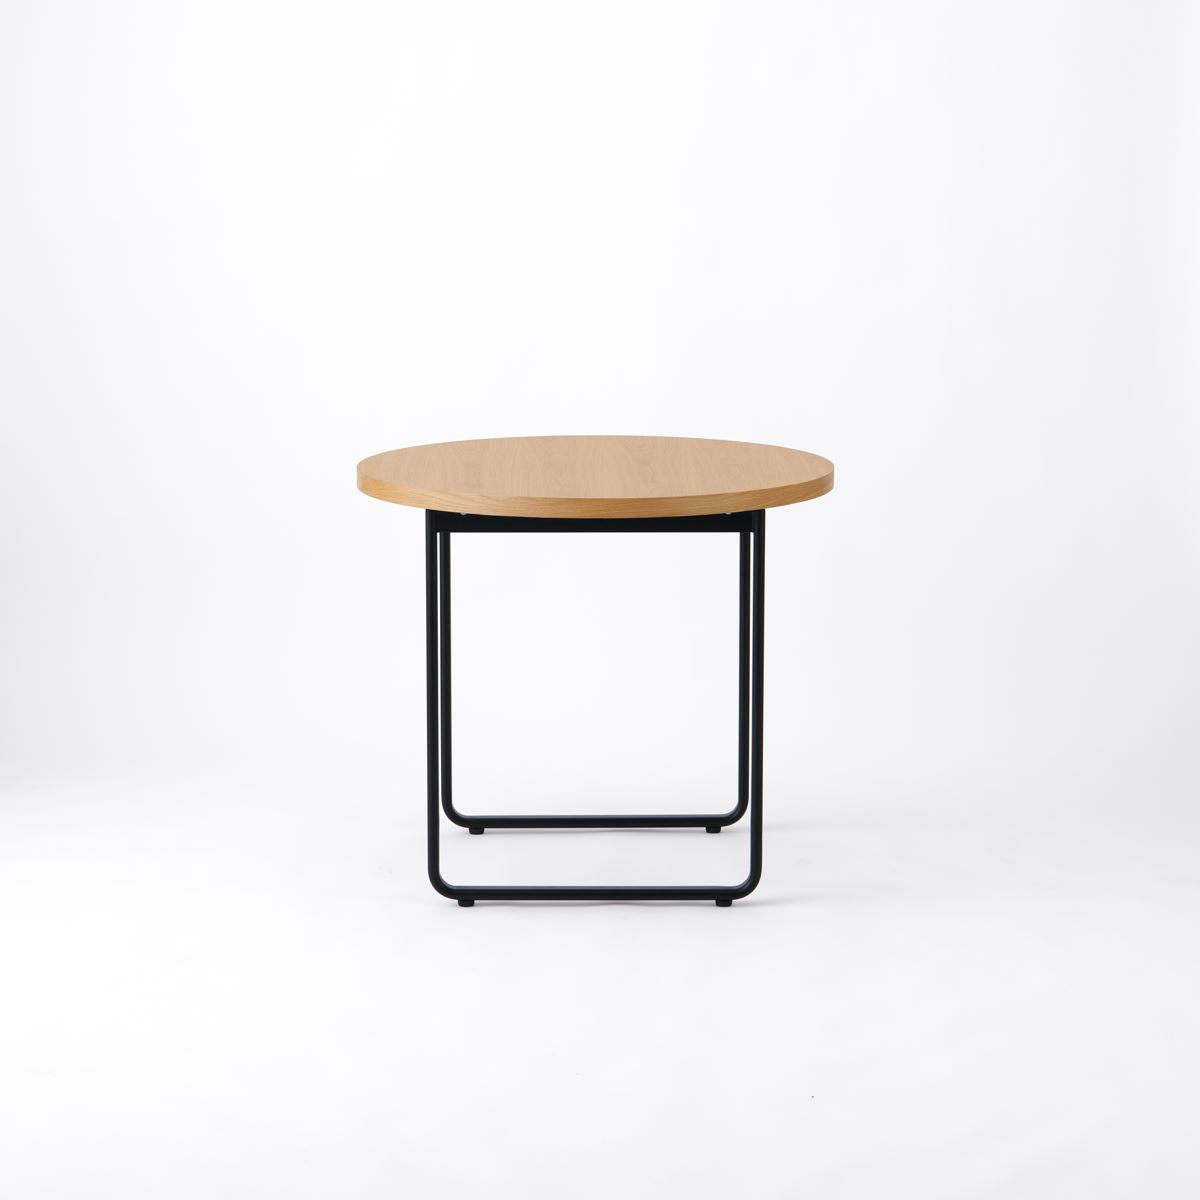 KUUM Table Φ850 - オーク突板ナチュラル / クーム  テーブル